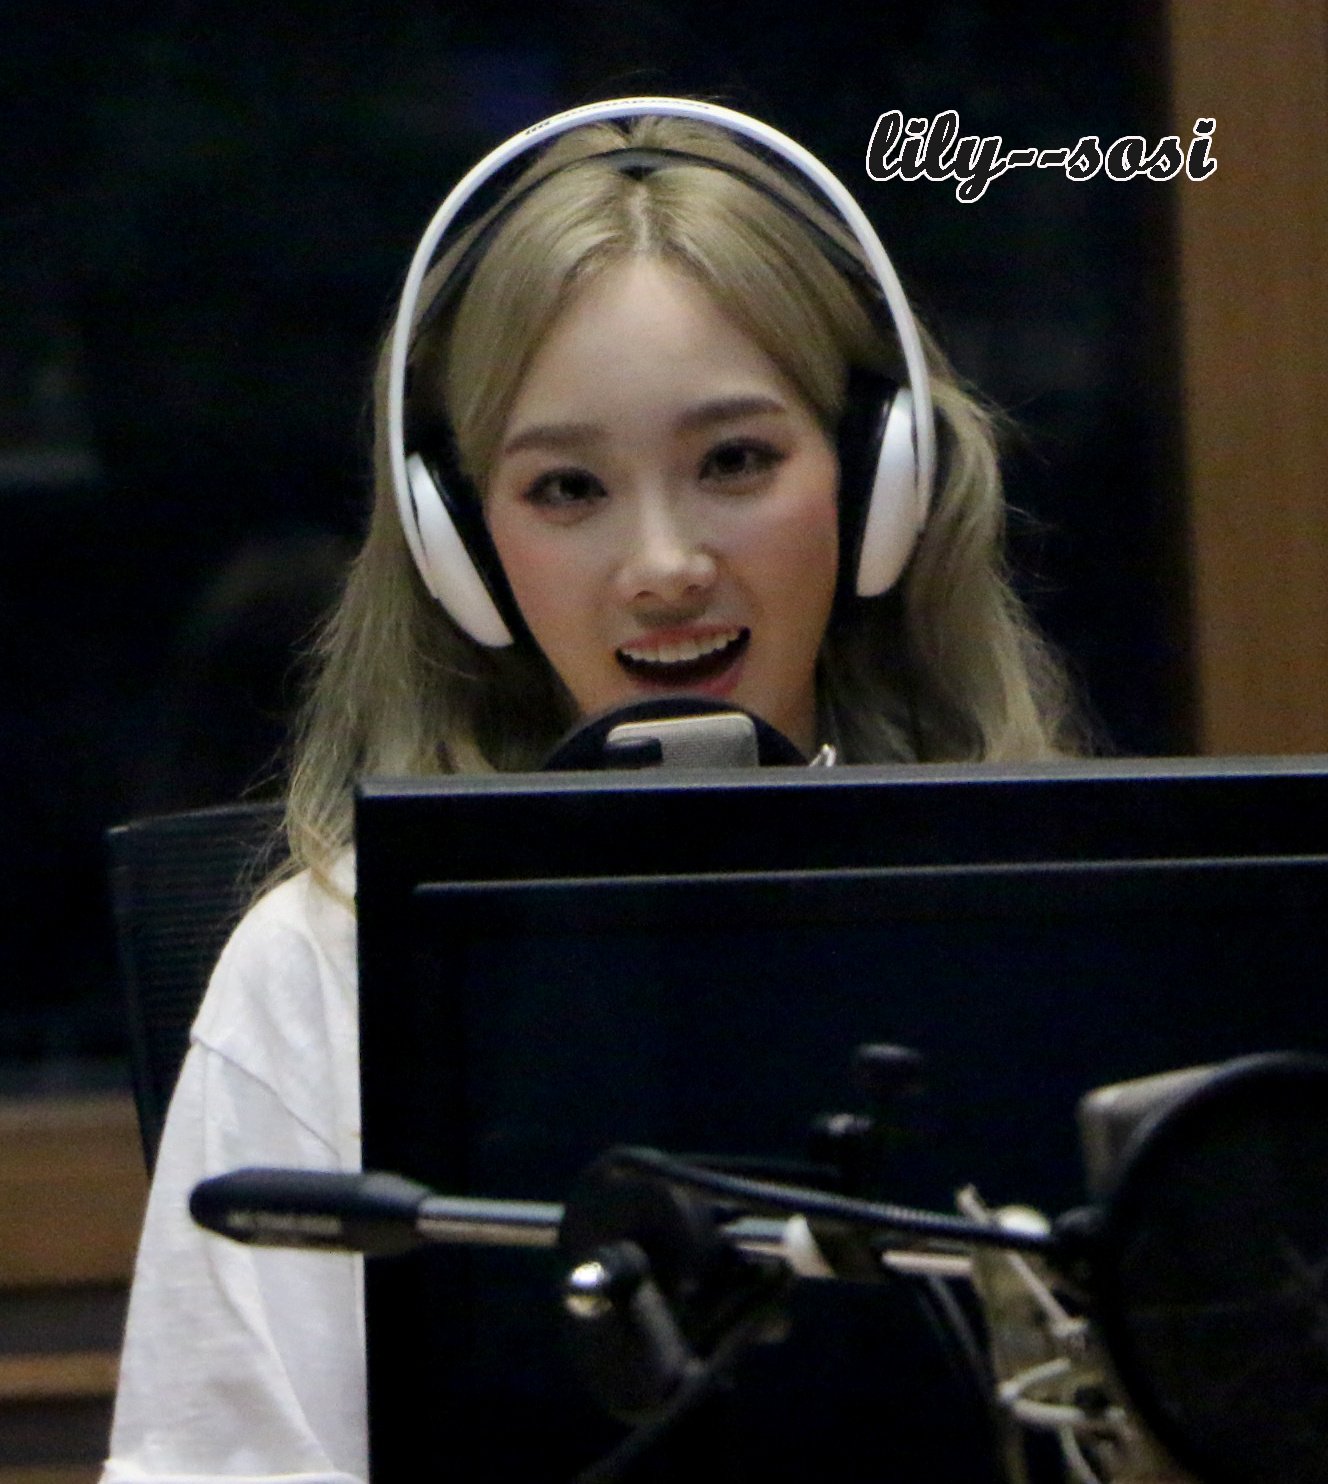 [OTHER][06-02-2015]Hình ảnh mới nhất từ DJ Sunny tại Radio MBC FM4U - "FM Date" - Page 27 6f4spFhZPh-3000x3000